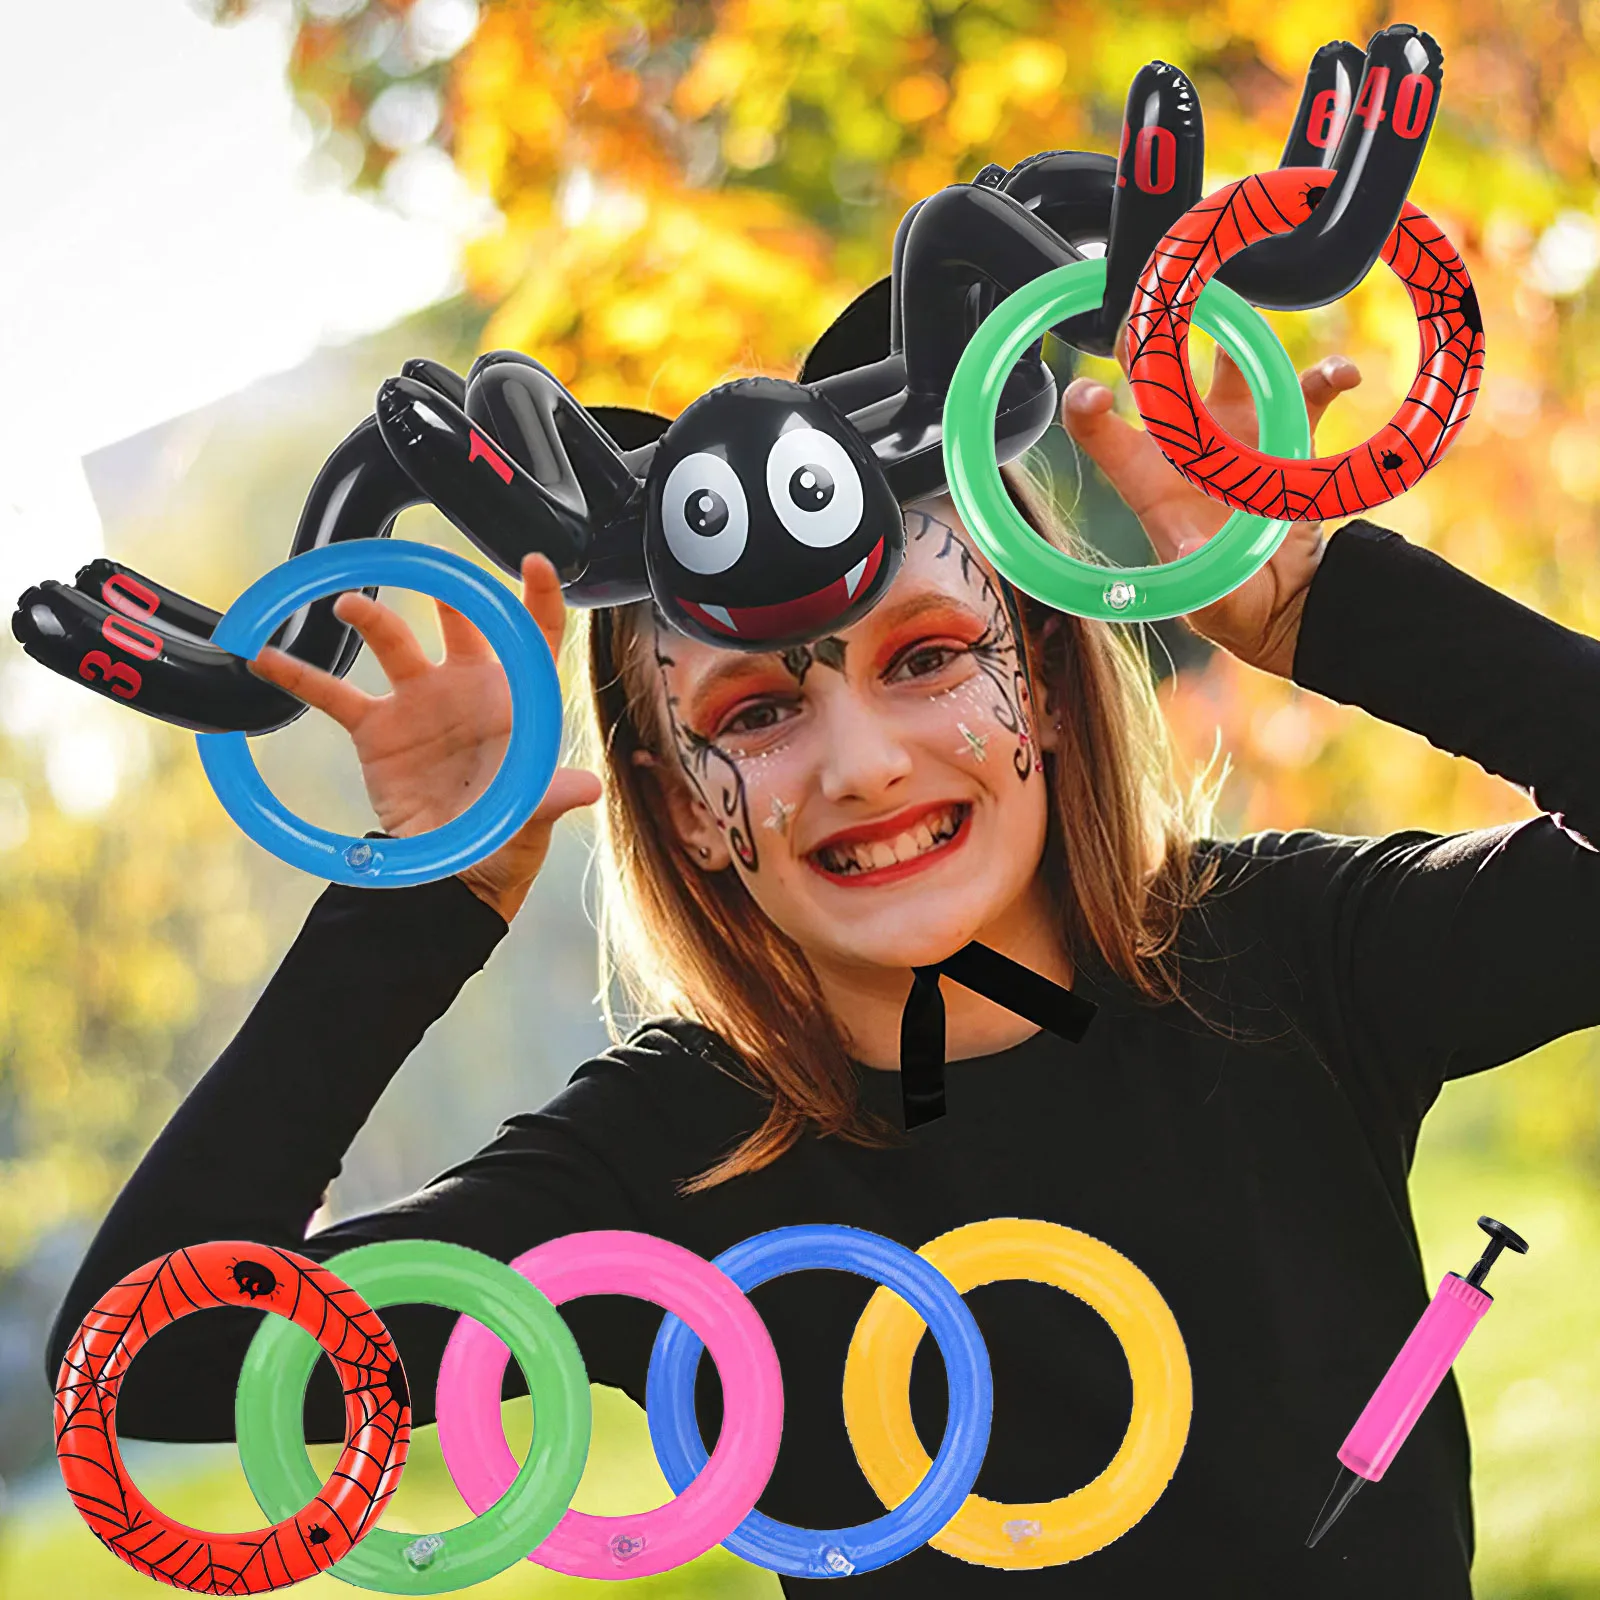 

Искусственная игра надувные пауки ведьма шляпа бросать игра для детей хэллоуивечерние Вечеринка Сувениры в помещении на открытом воздухе ...